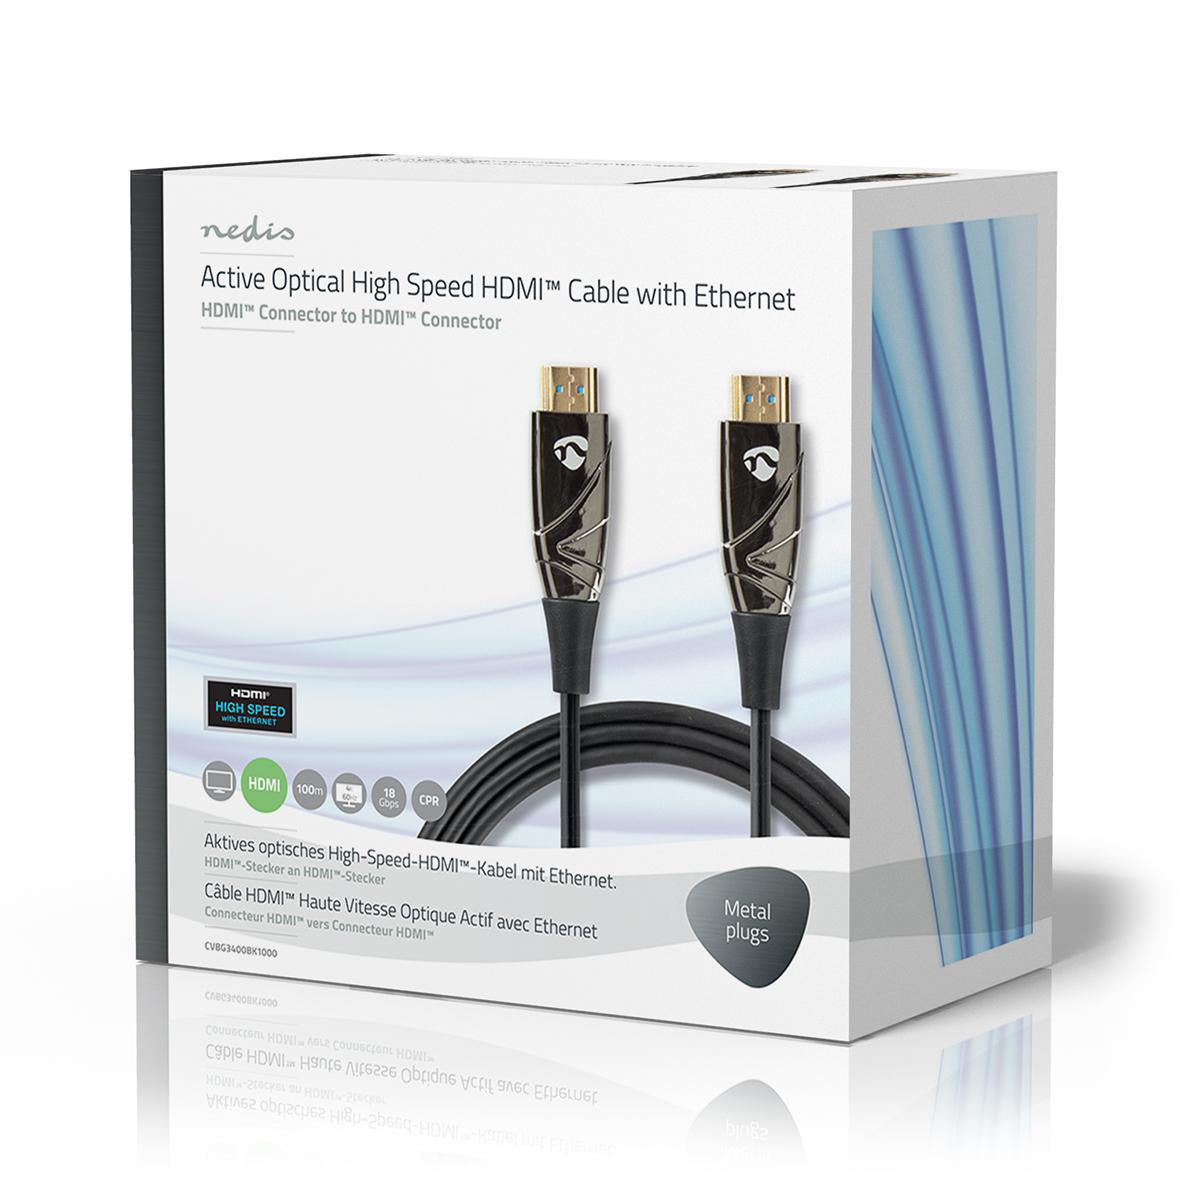 Aktive optische High Speed HDMI-Kabel mit Ethernet | HDMI™ Stecker | HDMI™ Stecker | 4K@60Hz | 18 Gbps | 100.0 m | Rund | PVC | Schwarz | Kartonverpackung